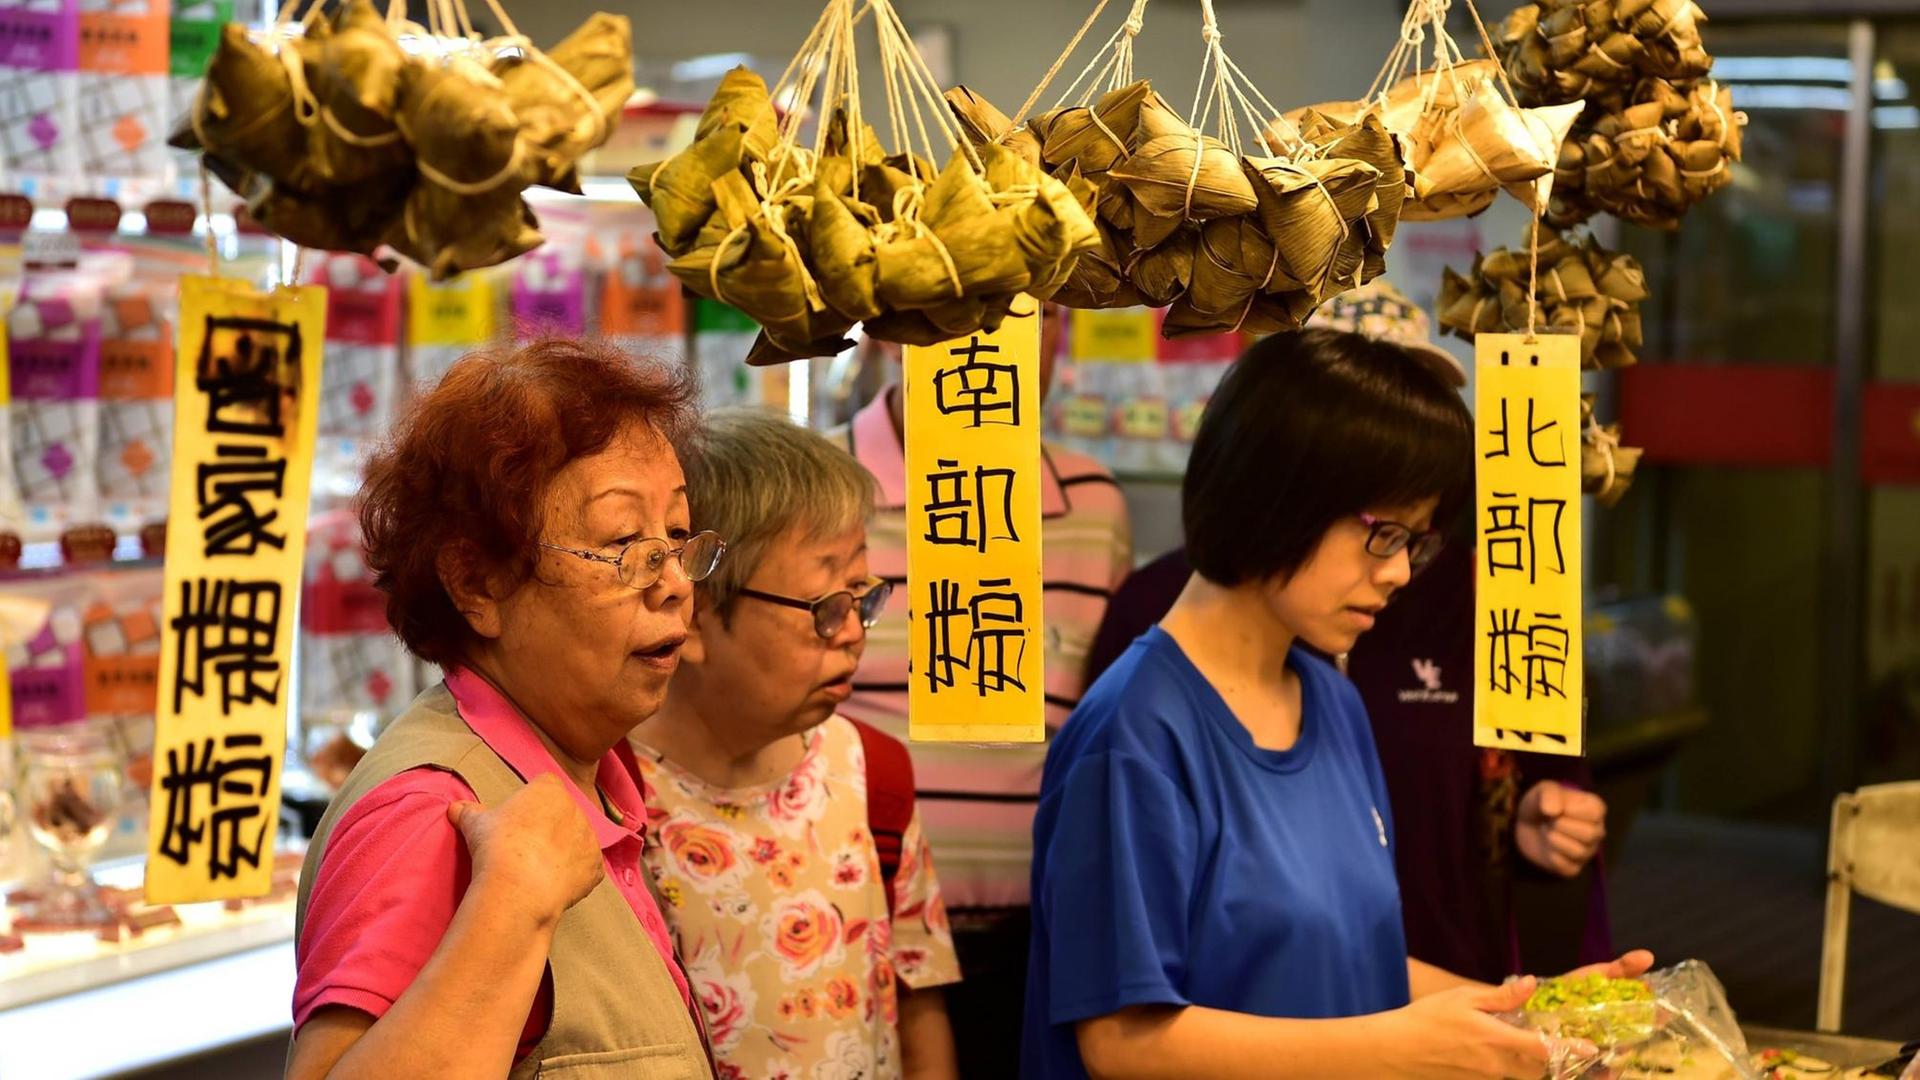 Szene auf einem markt in Taipeh. Die Frauen kaufen "zongzi".